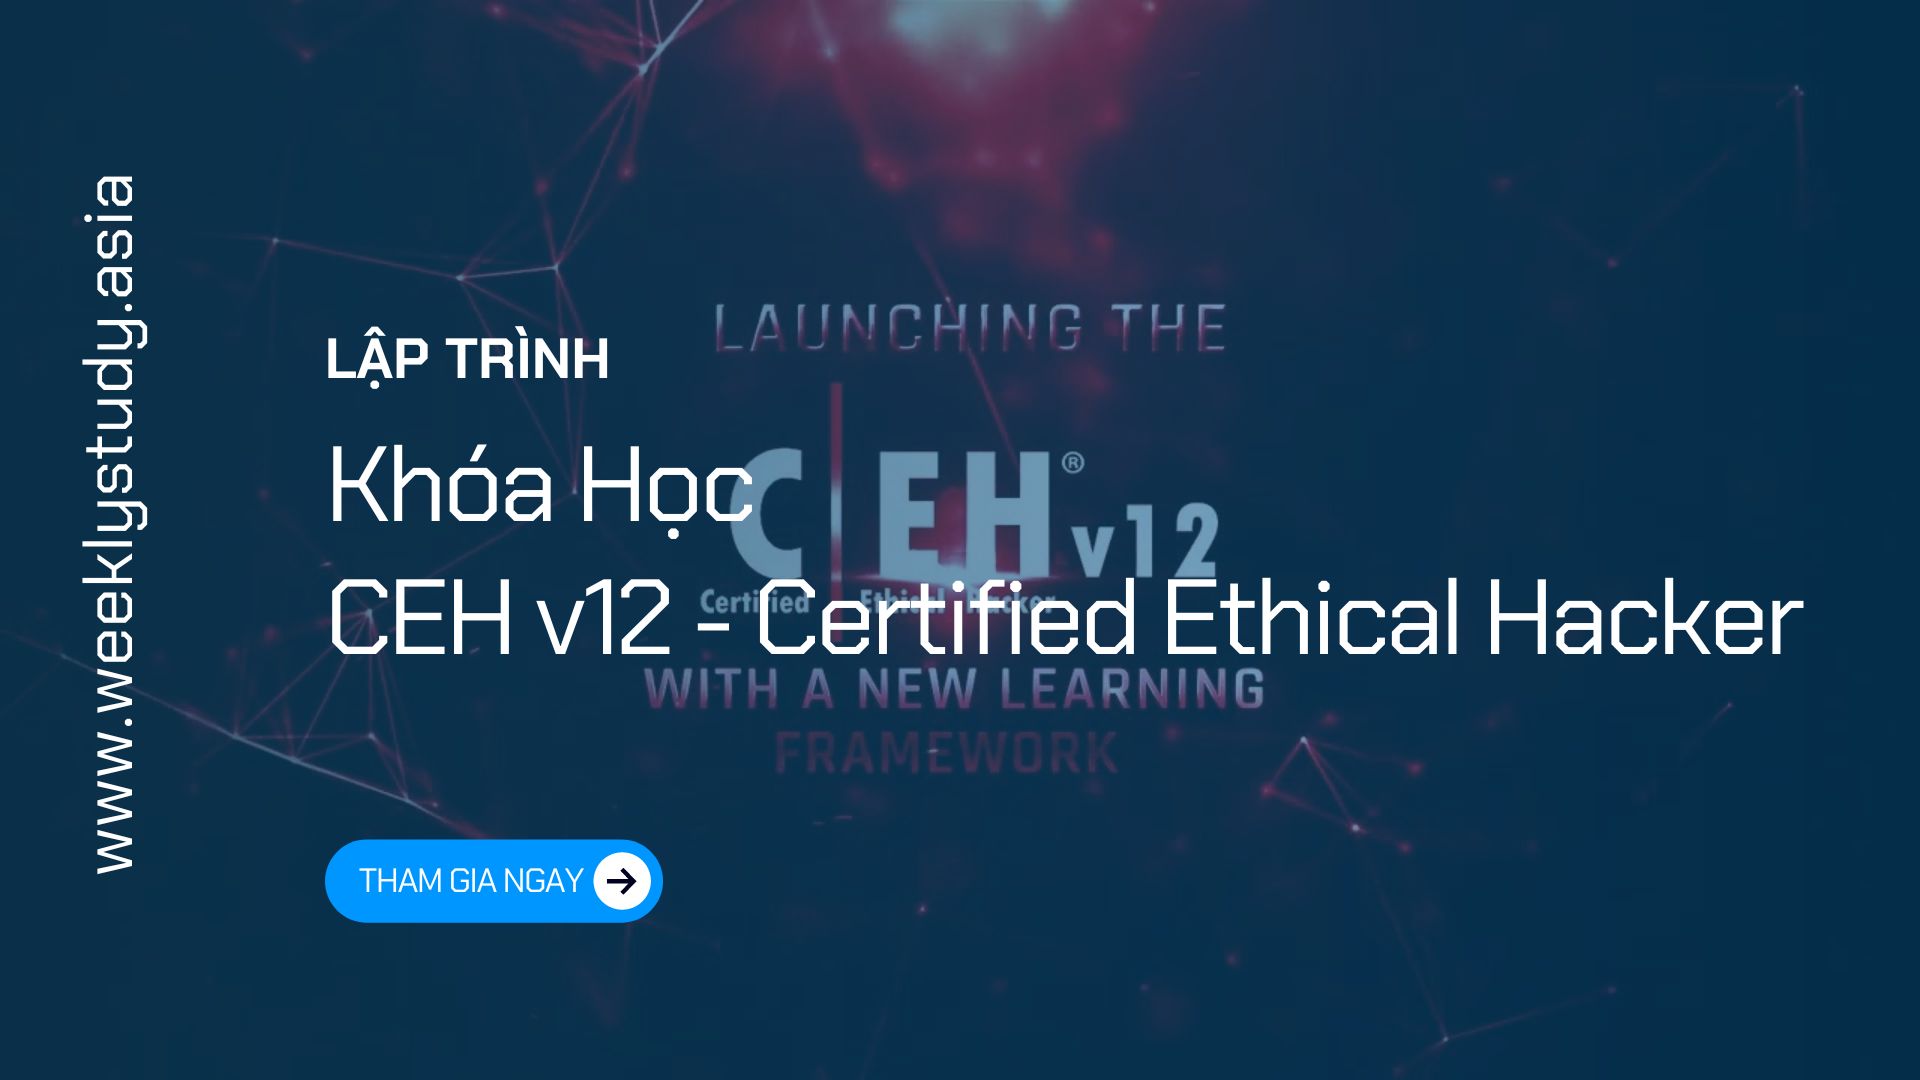 khoa-hoc-ceh-v12-certified-ethical-hacker-ma-7642a